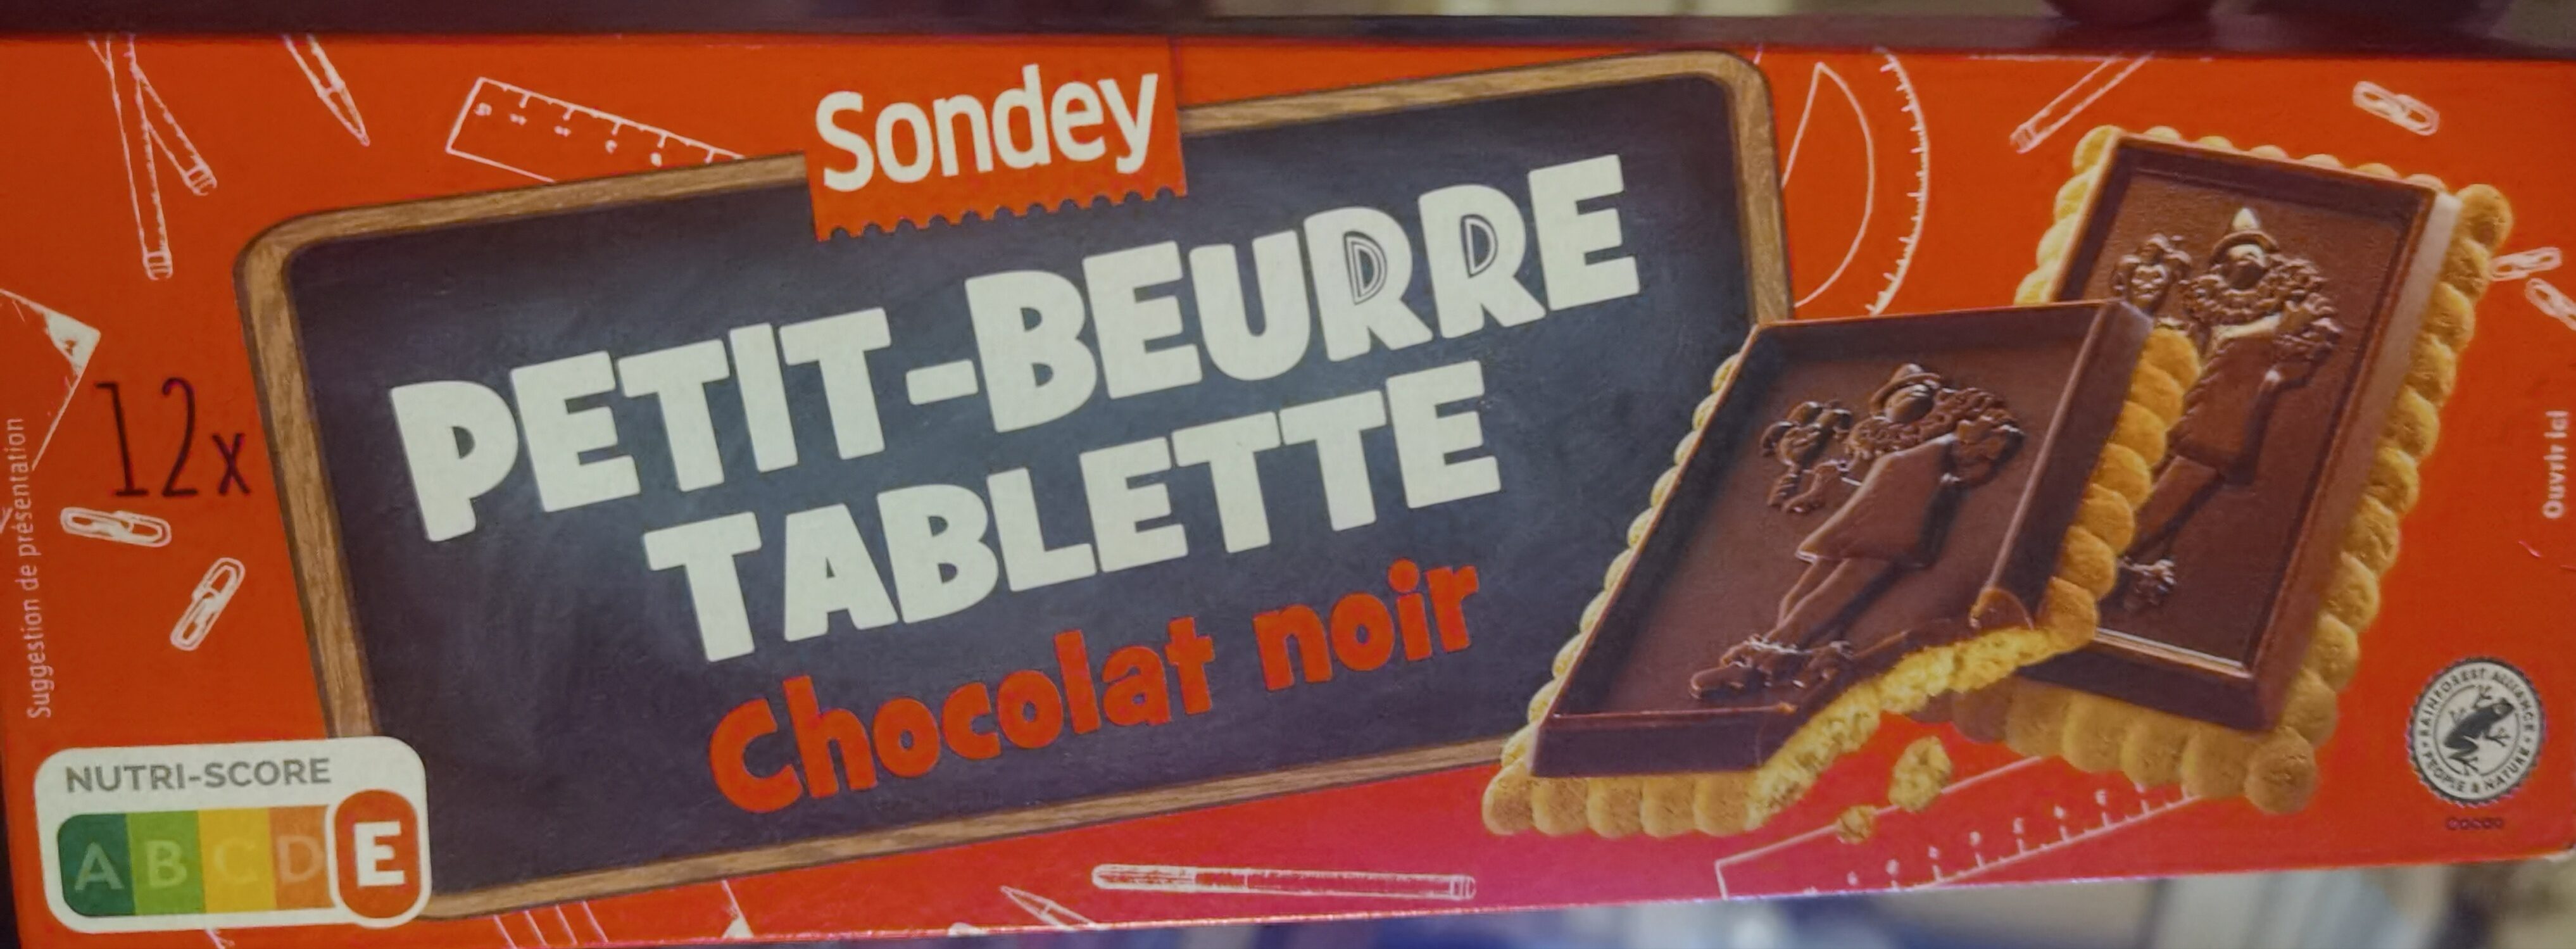 Petit Beurre Tablette Chocolat noir - Product - fr